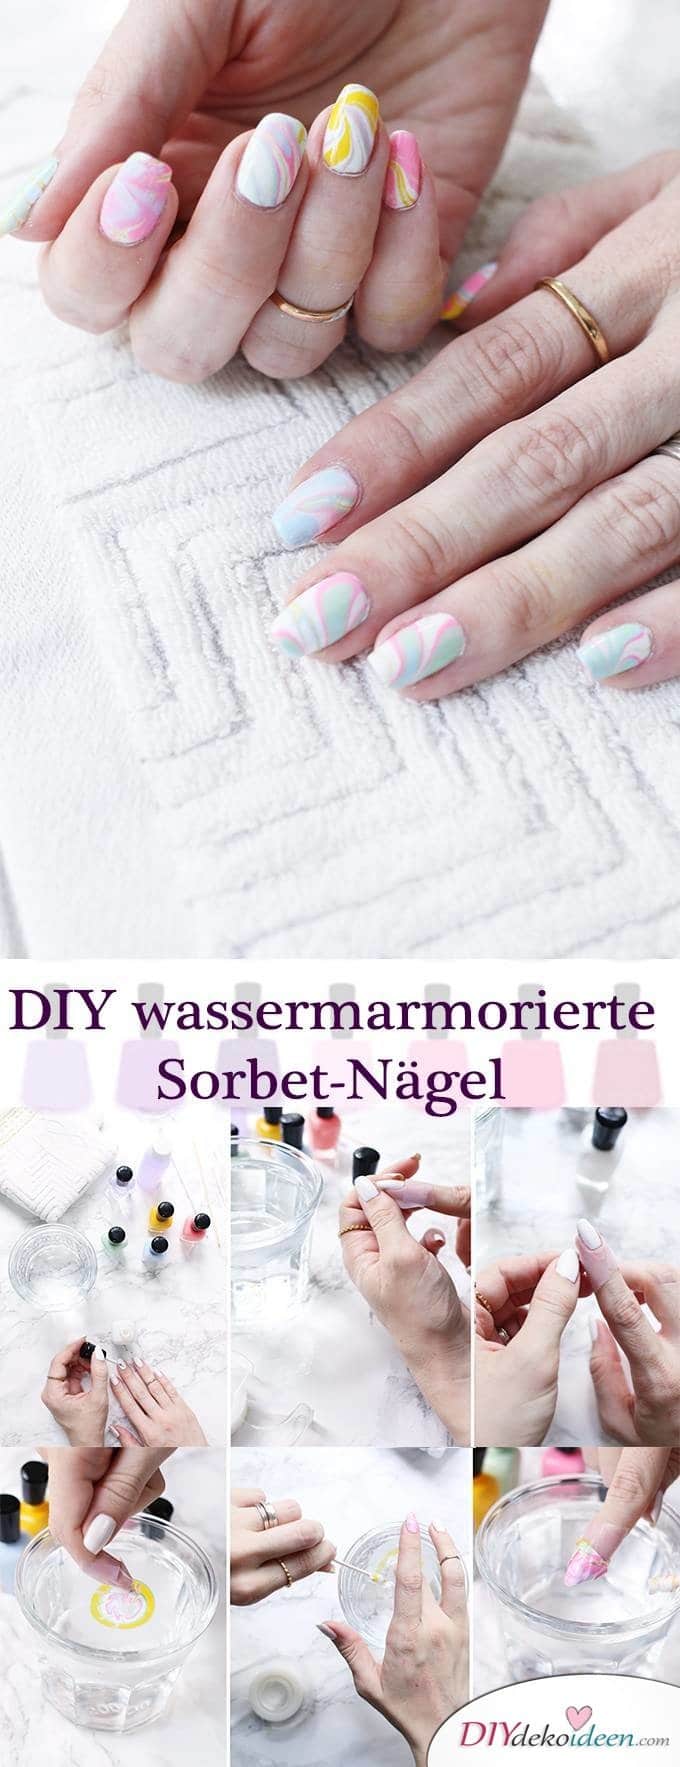 DIY Nailart wassermarmorierte Sorbet-Nägel - Watermarble - Sommernägel 